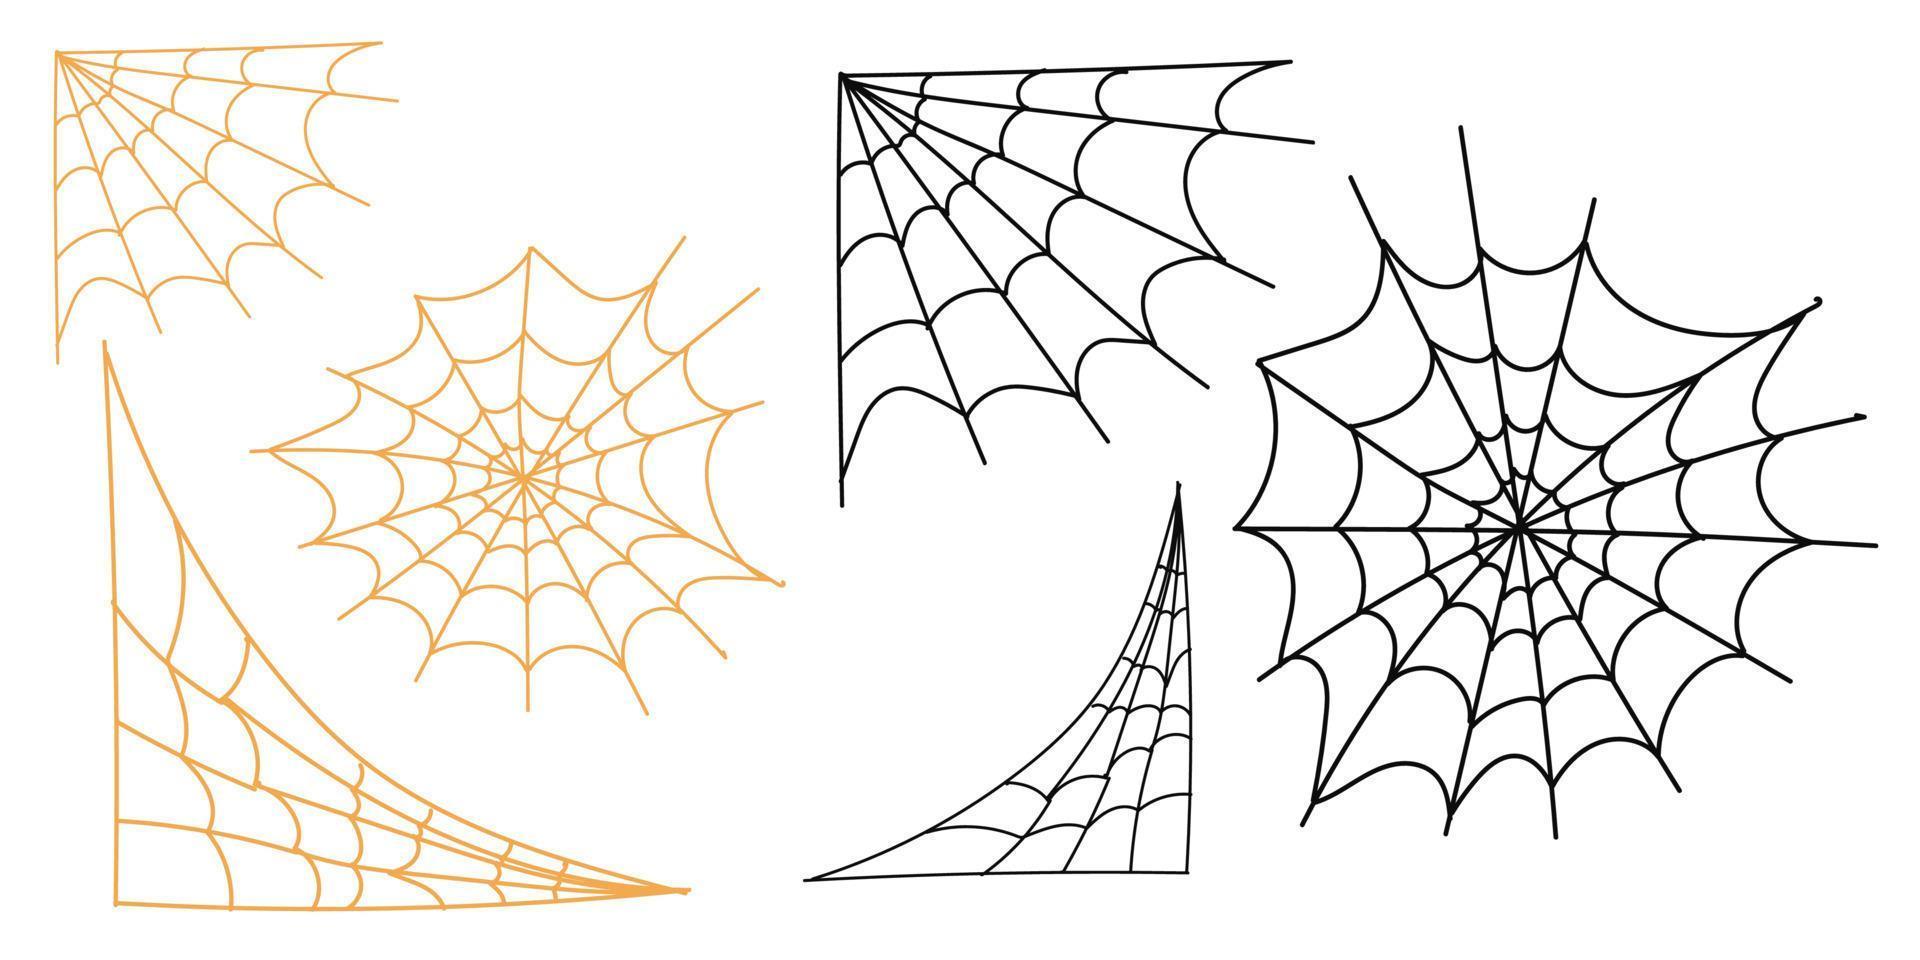 reeks van spin web voor halloween. halloween spinneweb, kaders en grenzen, eng elementen voor decoratie. hand- getrokken spin web of spinneweb met hangende spin. vector